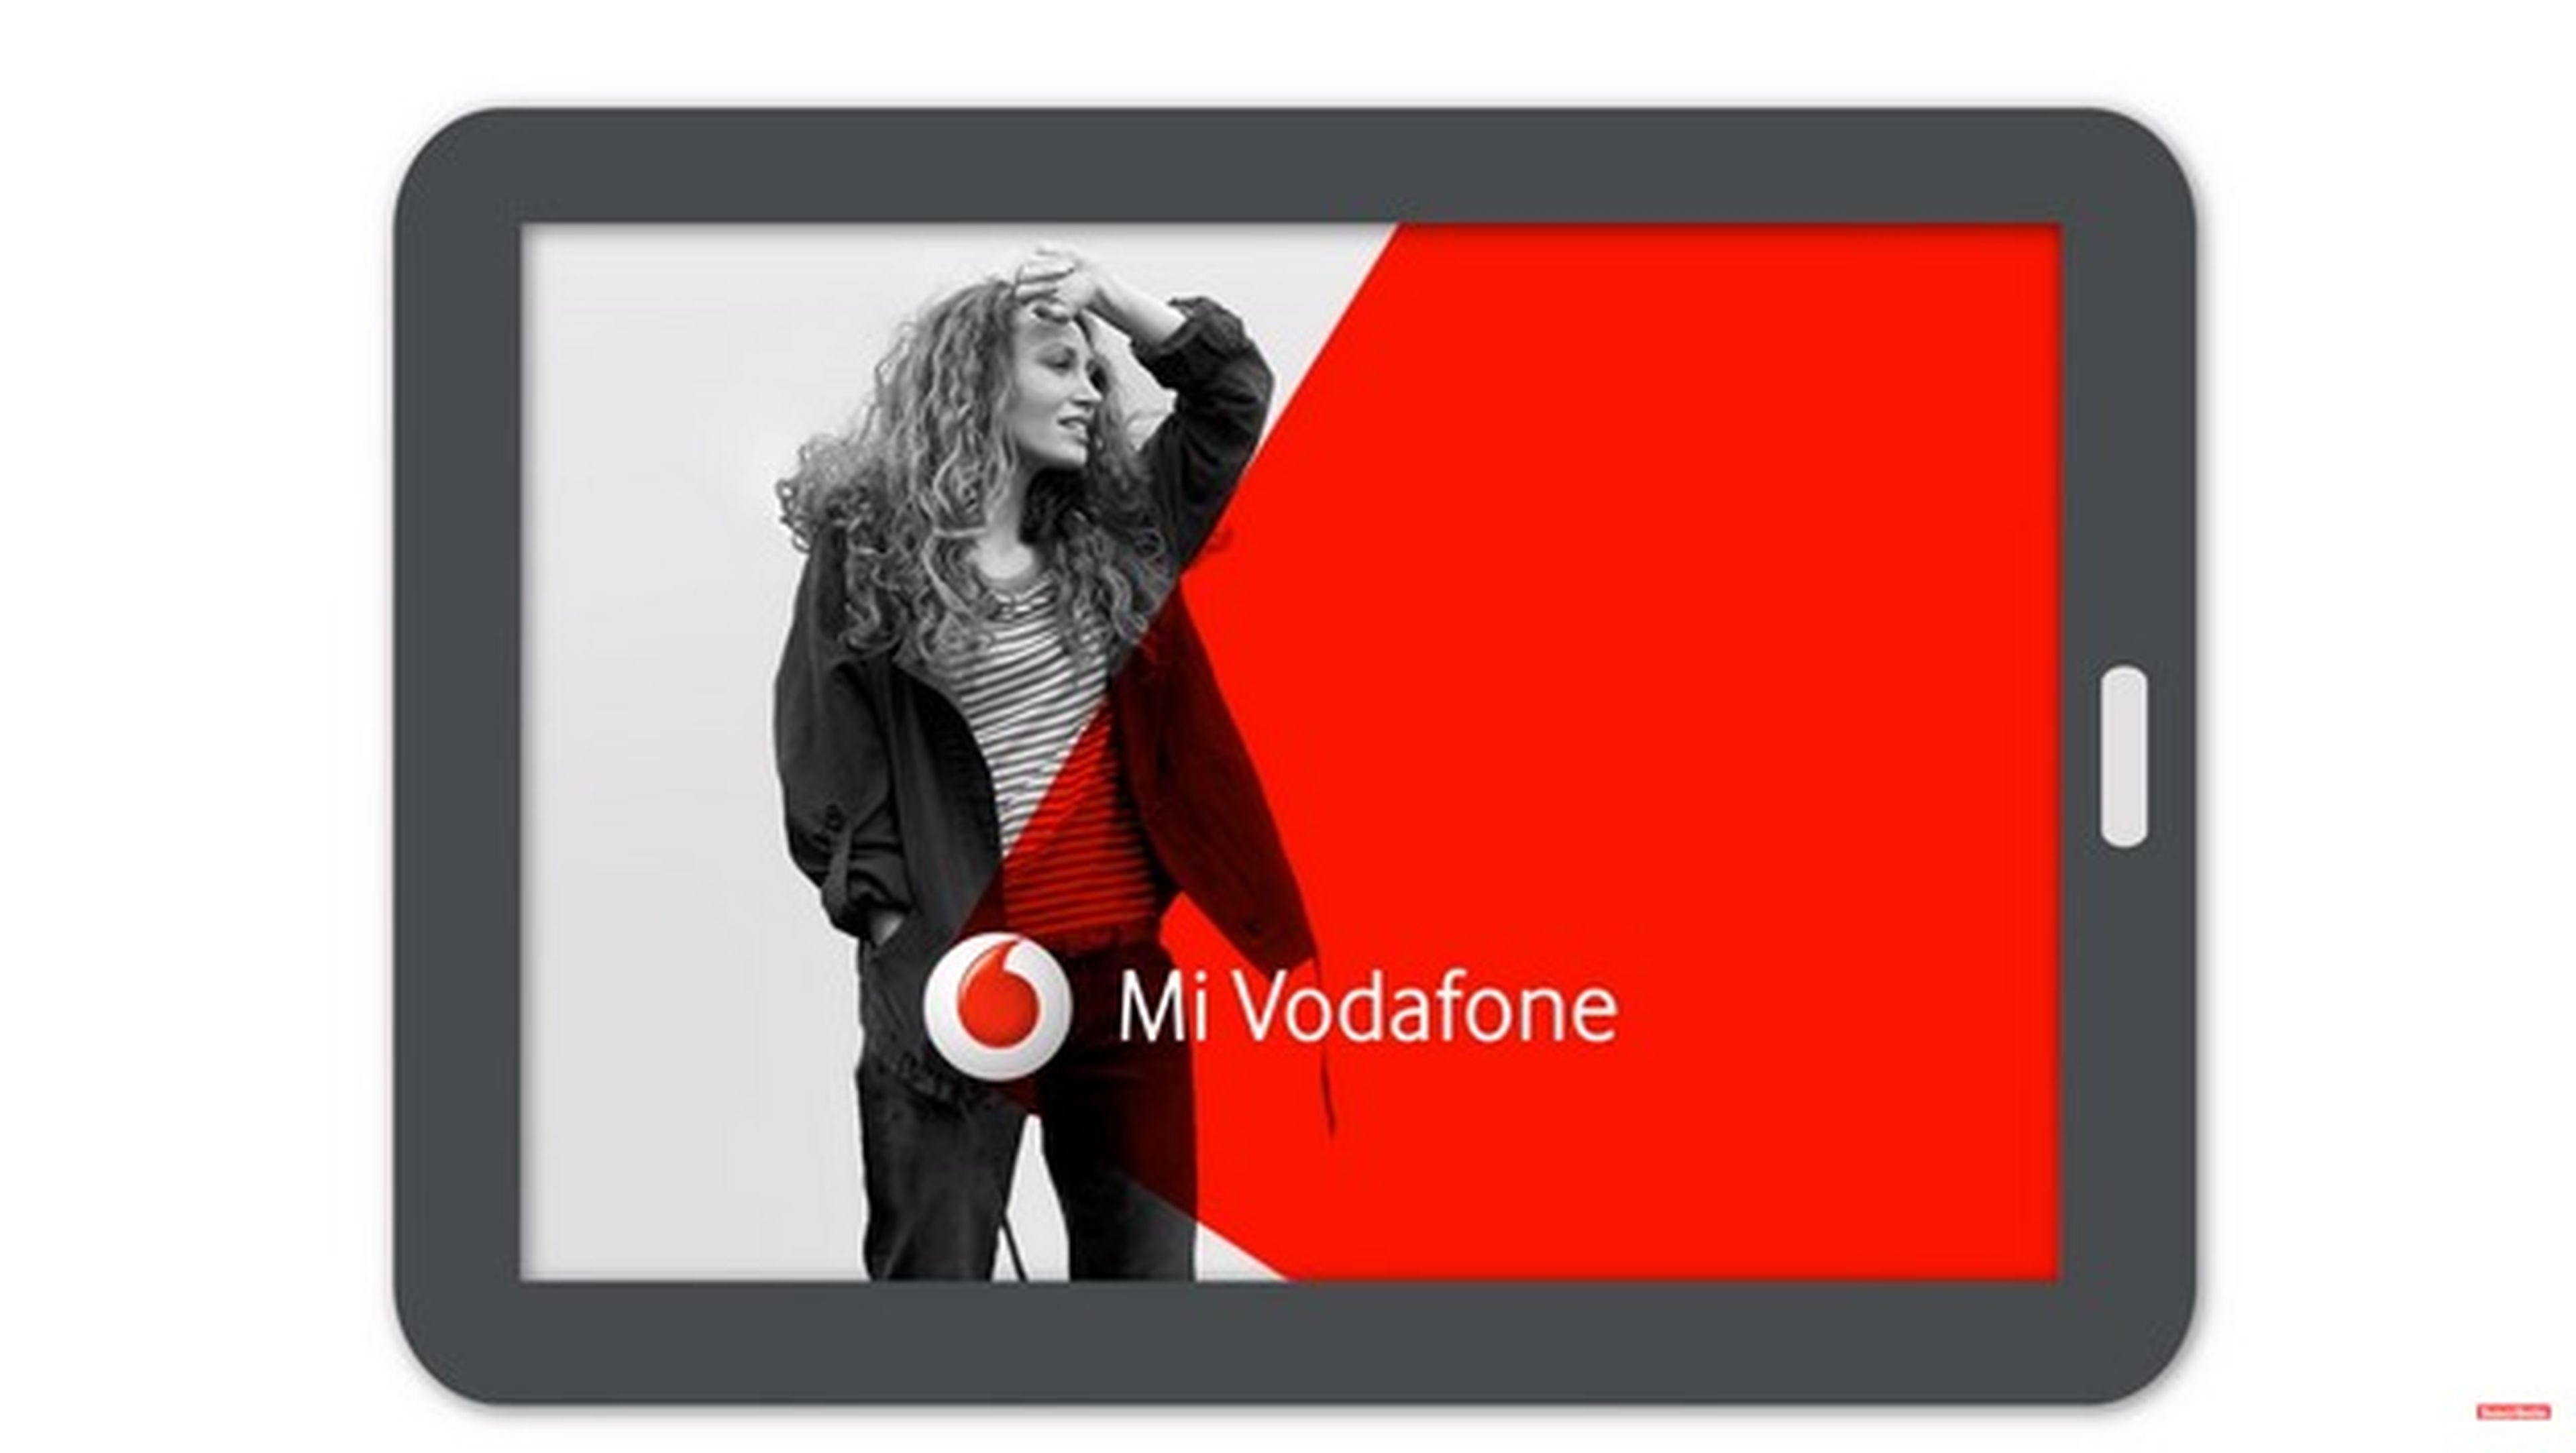 Vodafone convierte tu factura del móvil e Internet en un vídeo personalizado para que la entiendas.